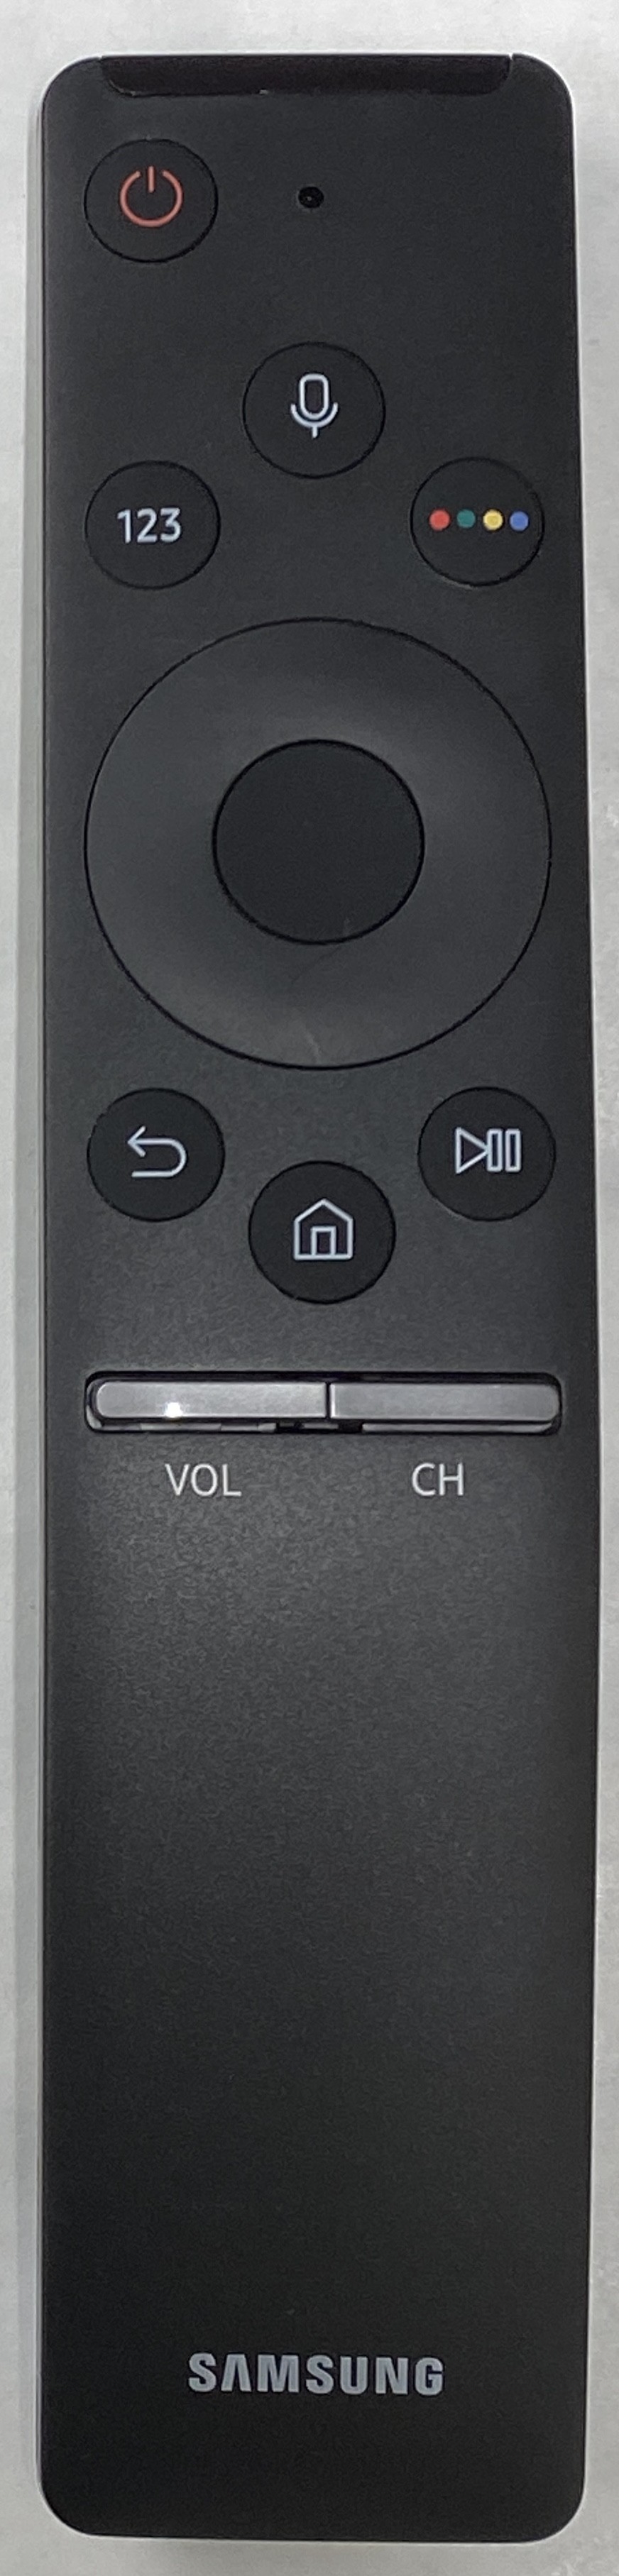 SAMSUNG BN59-01266A Smart Remote Control Original  